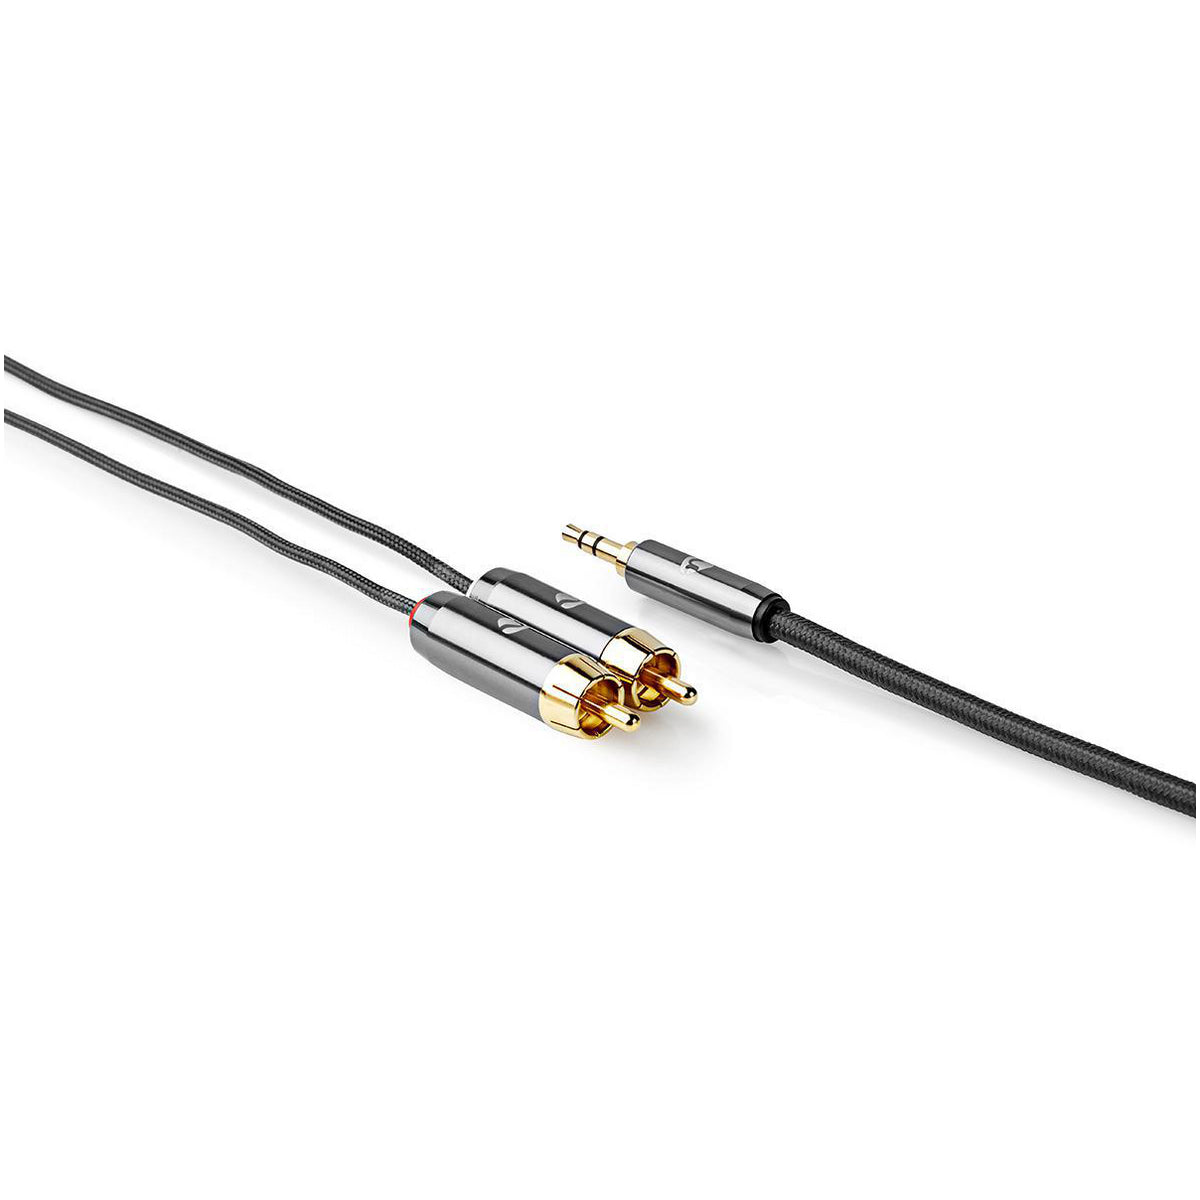 Stereo-Audiokabel | 3.5 mm Stecker | 2x RCA Stecker | Vergoldet | 2.00 m | Rund | Grau / Gun Metal Grau | Verpackung mit Sichtfenster